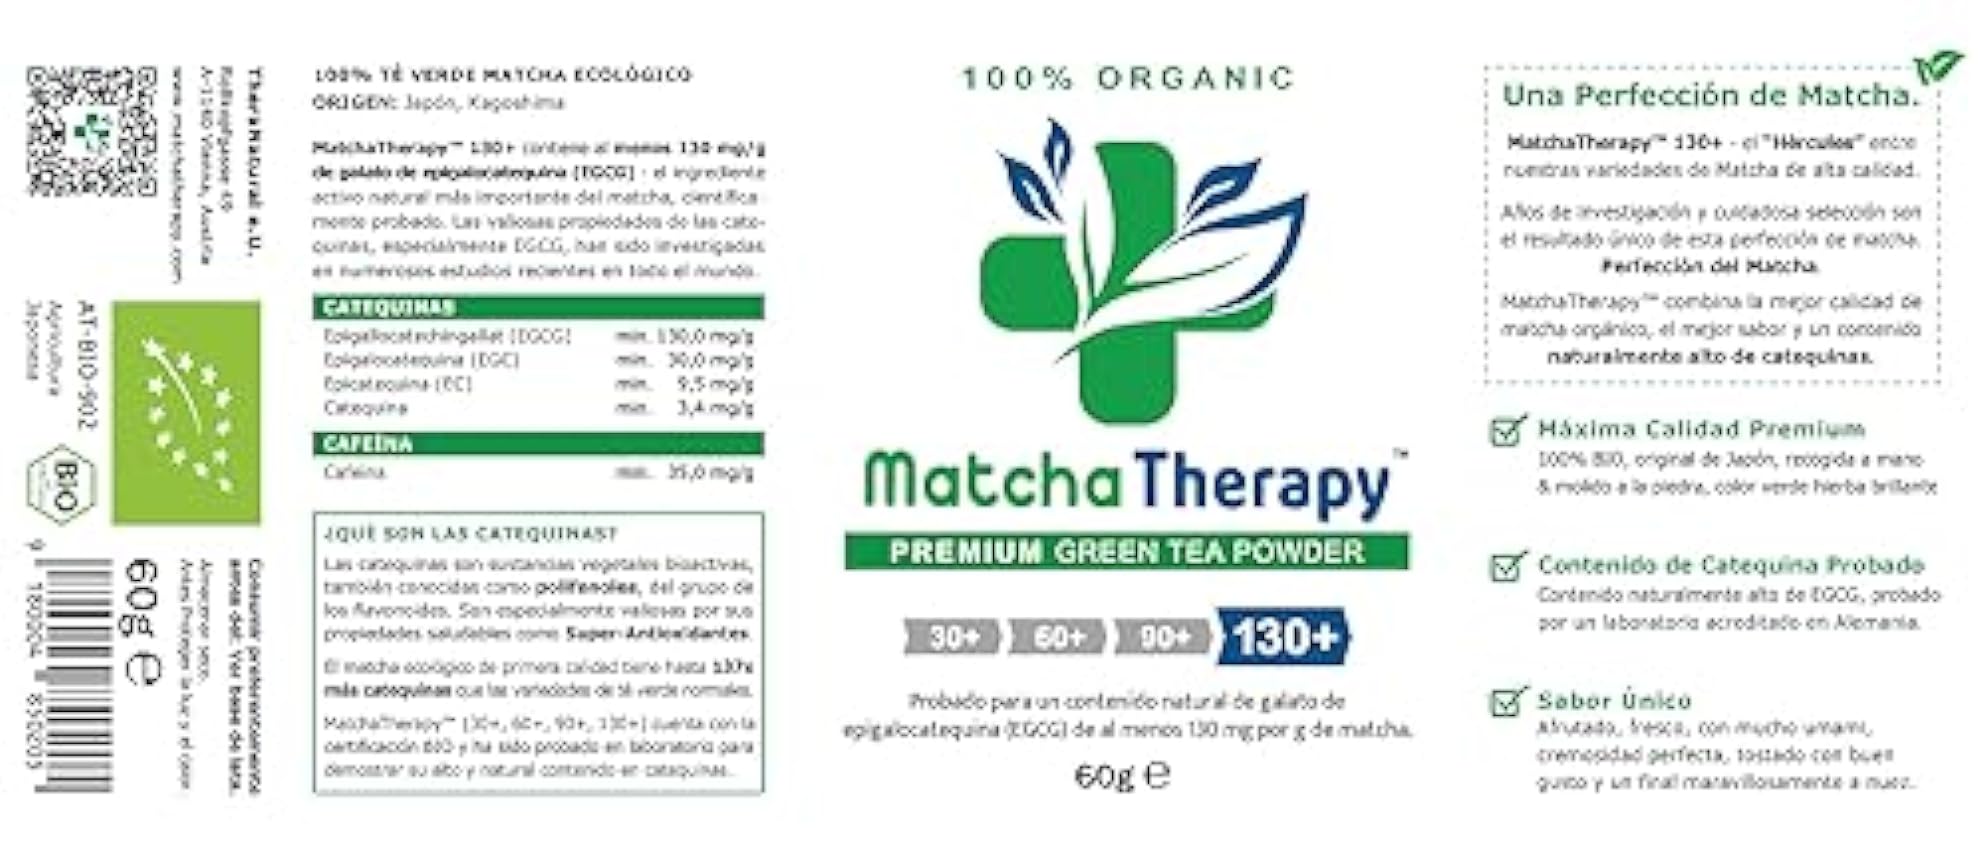 MatchaTherapy 130+ | Té Matcha 100% Ecológico | 60g | Al menos 130 mg/g de contenido de catequina probado EGCG | Apoya el sistema inmune & Nivel de Energia | Grado Premium | Té verde de Japón LEkdna7j